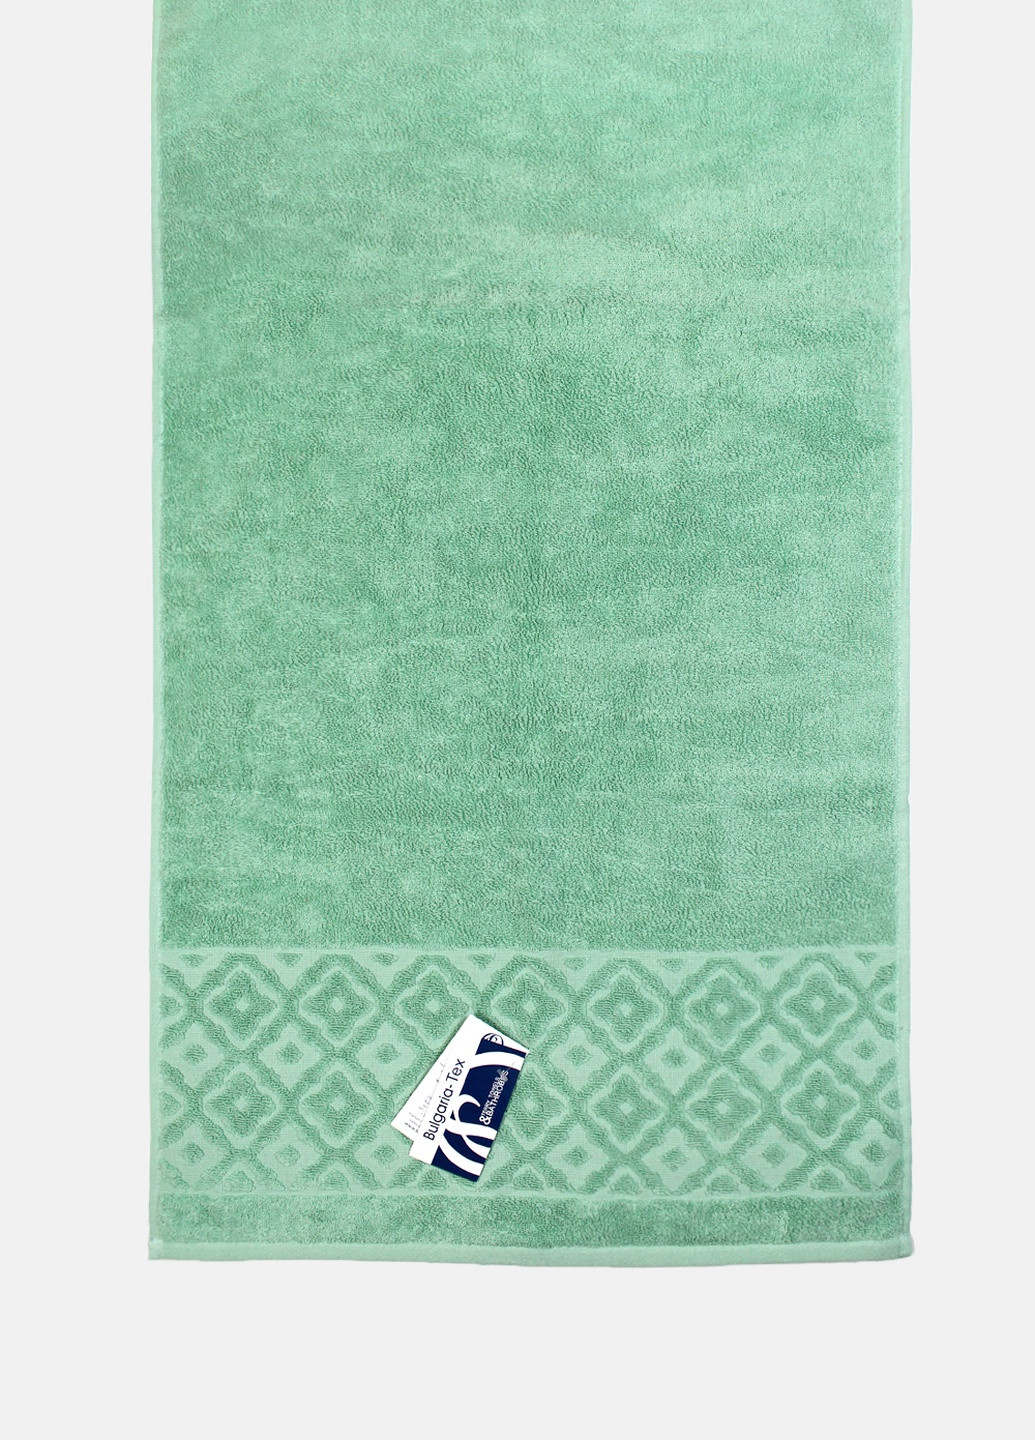 Bulgaria-Tex полотенце махровое lima, жаккардовое, с бордюром, мята, размер 70x140 cm салатовый производство - Болгария